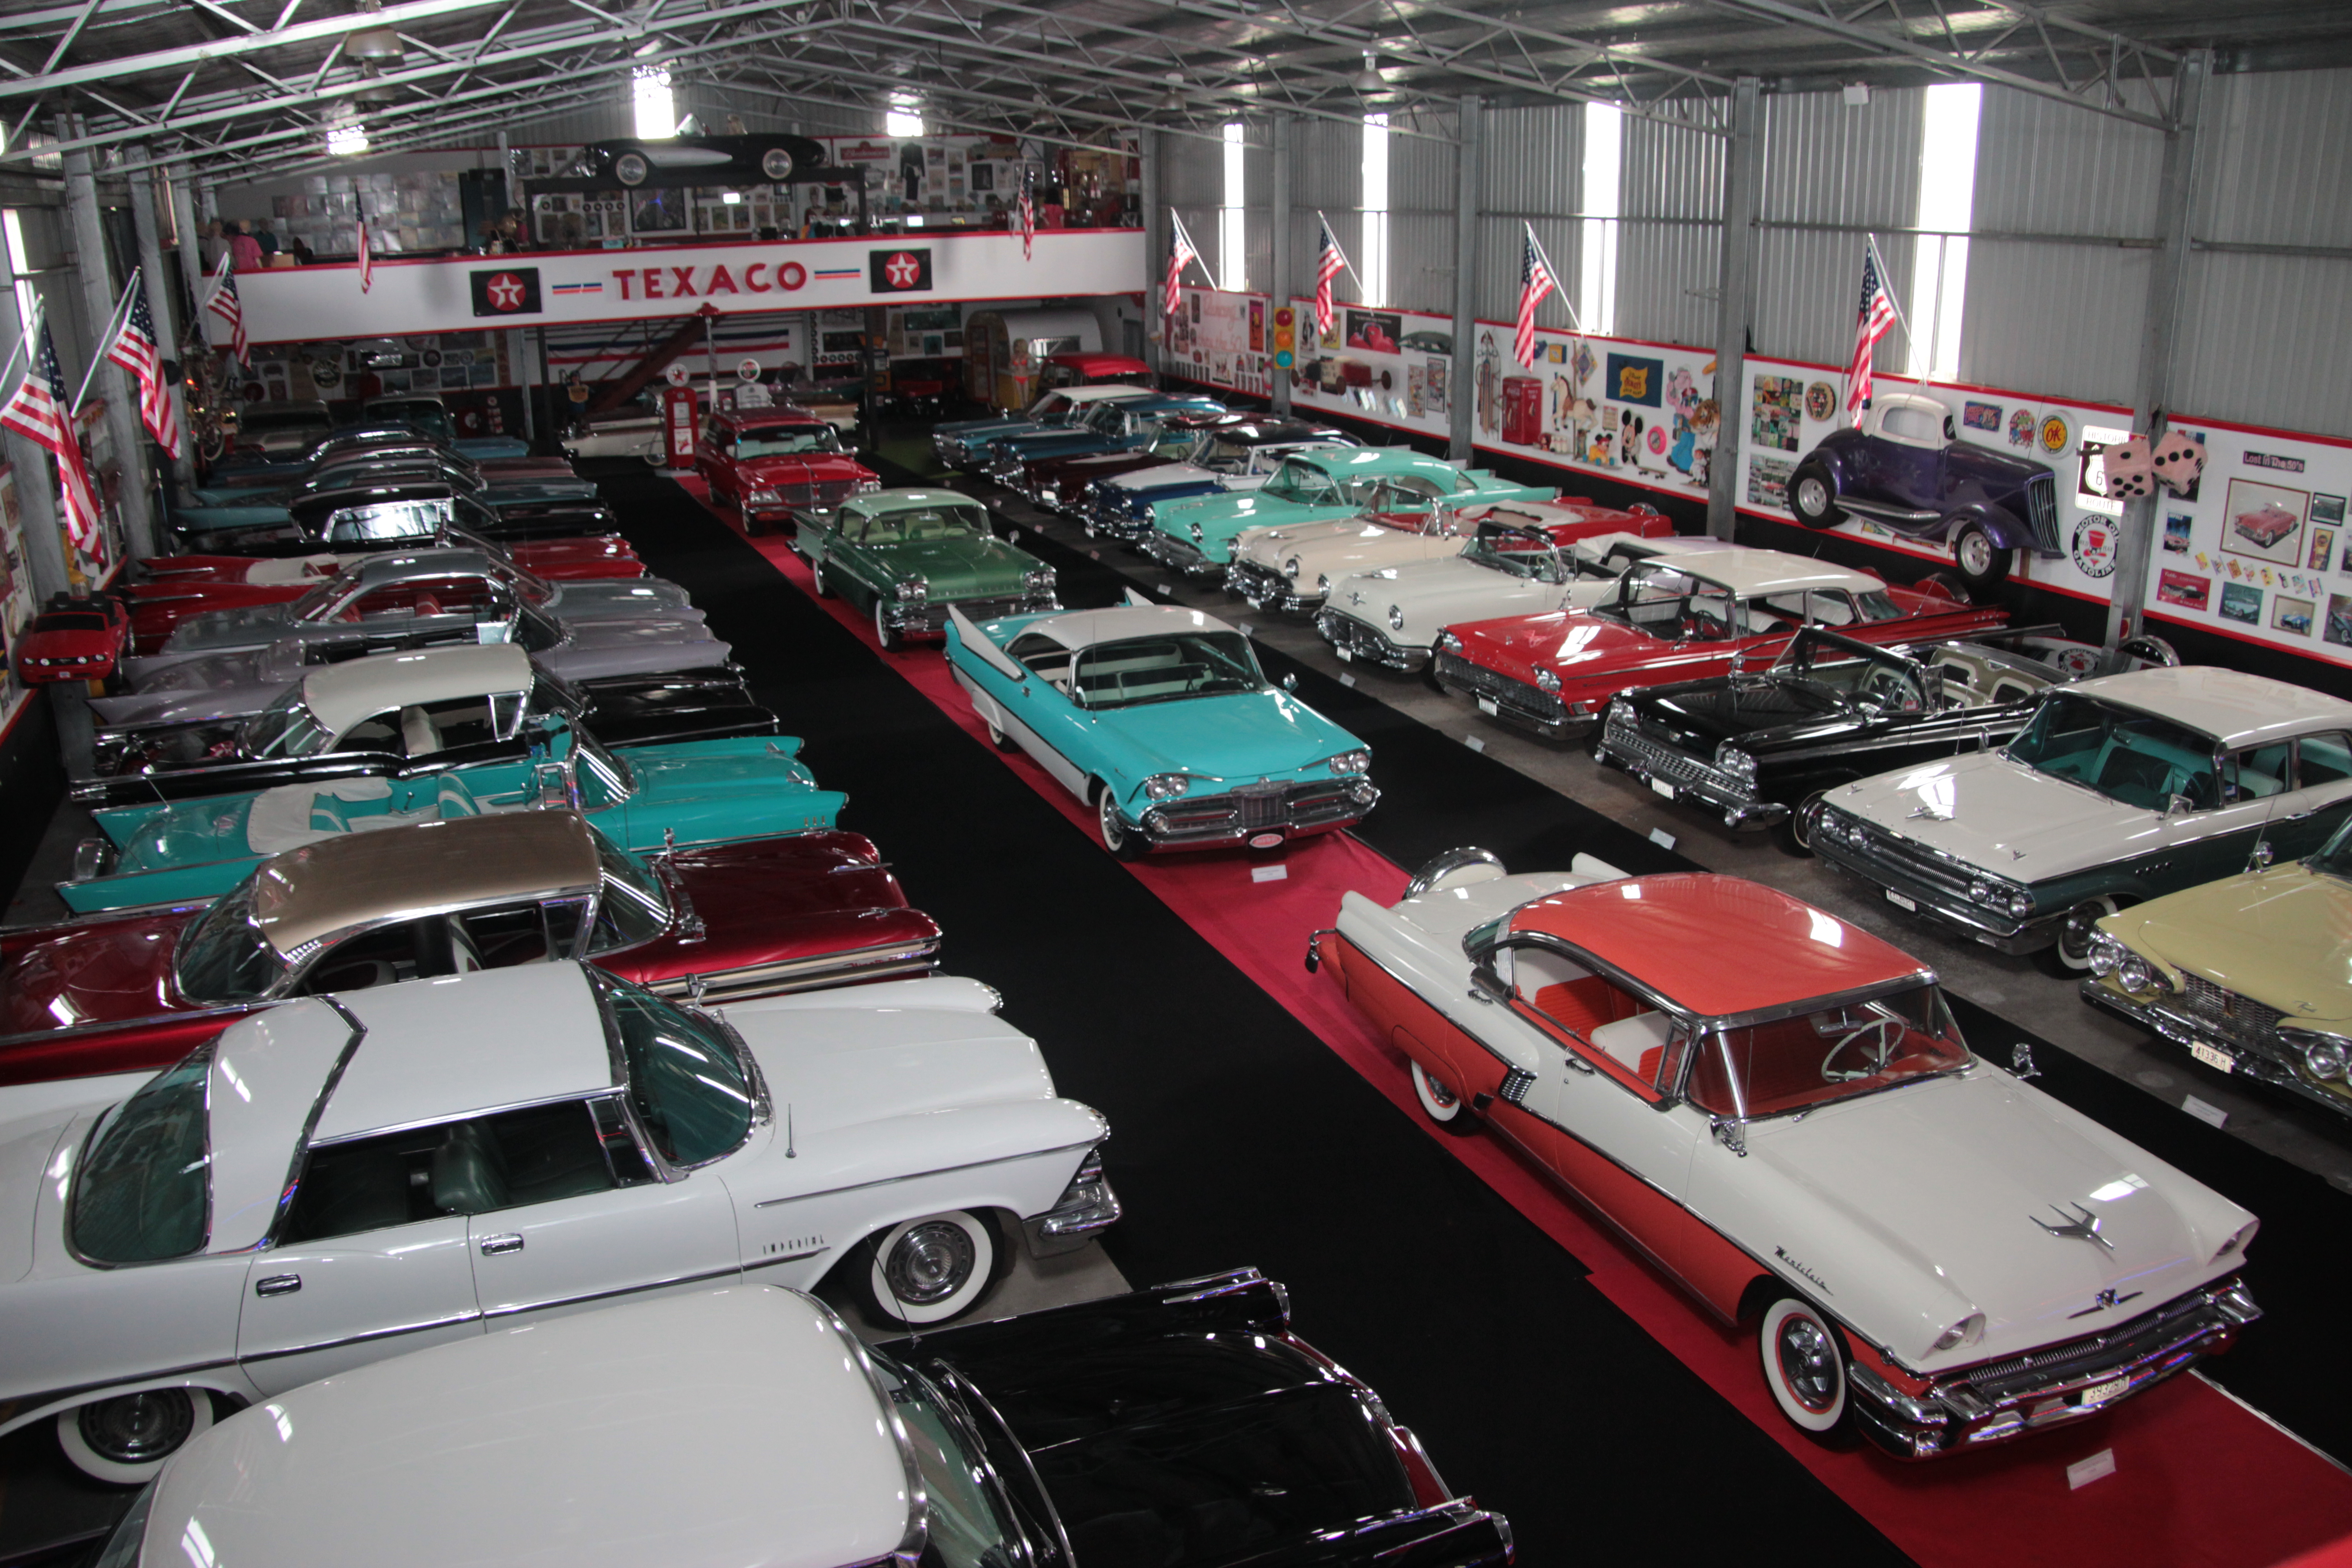 Kenya Premonition Laboratorium 10 Must-Visit Australian Automotive Museums - ManSpace Magazine